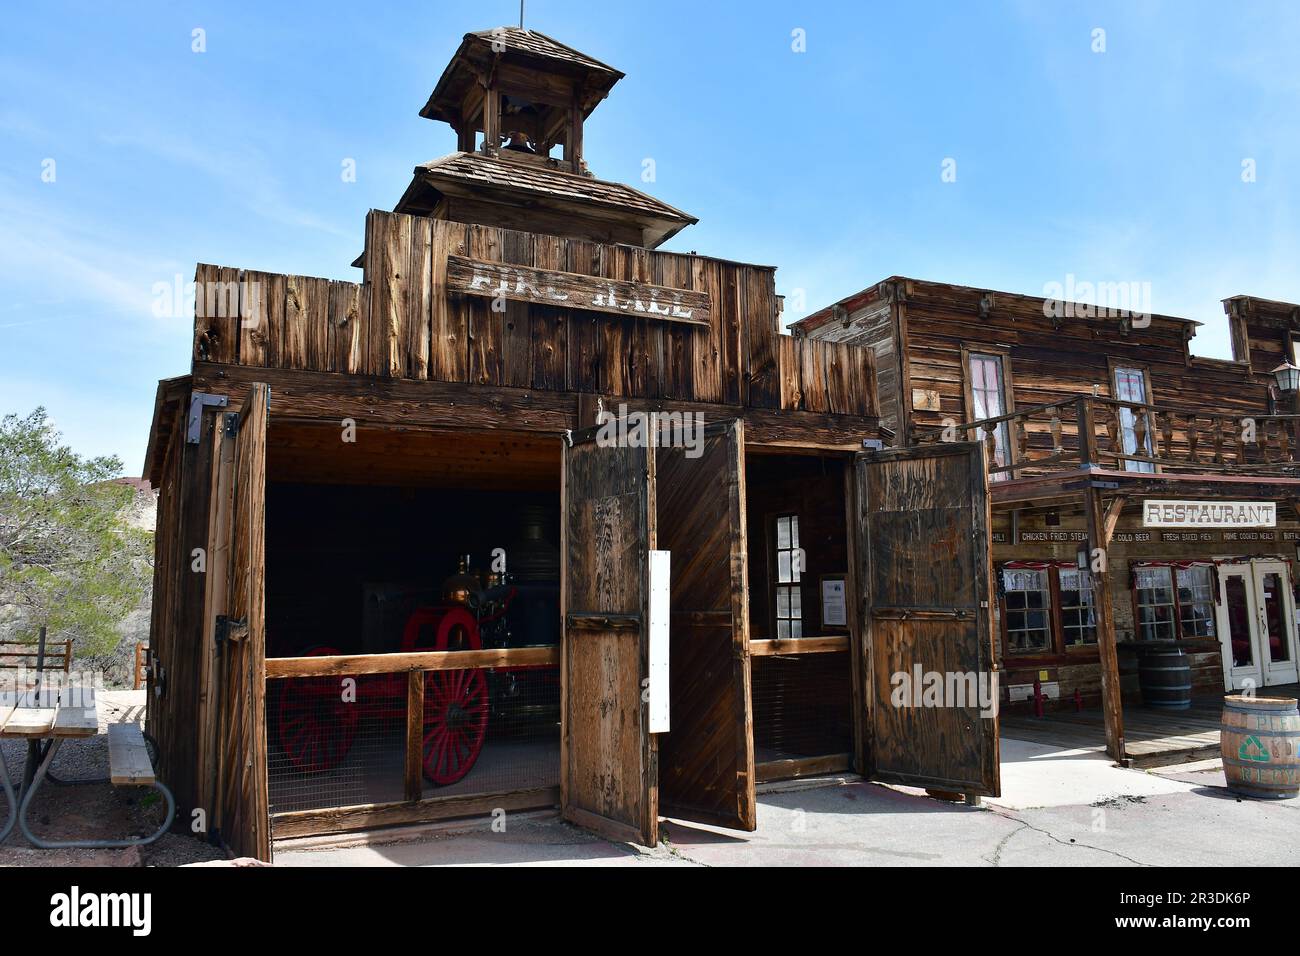 Feuerwache, Calico, Geisterstadt und ehemalige Bergbaustadt, San Bernardino County, Kalifornien, USA, Nordamerika, Historisches Wahrzeichen Von Kalifornien Stockfoto